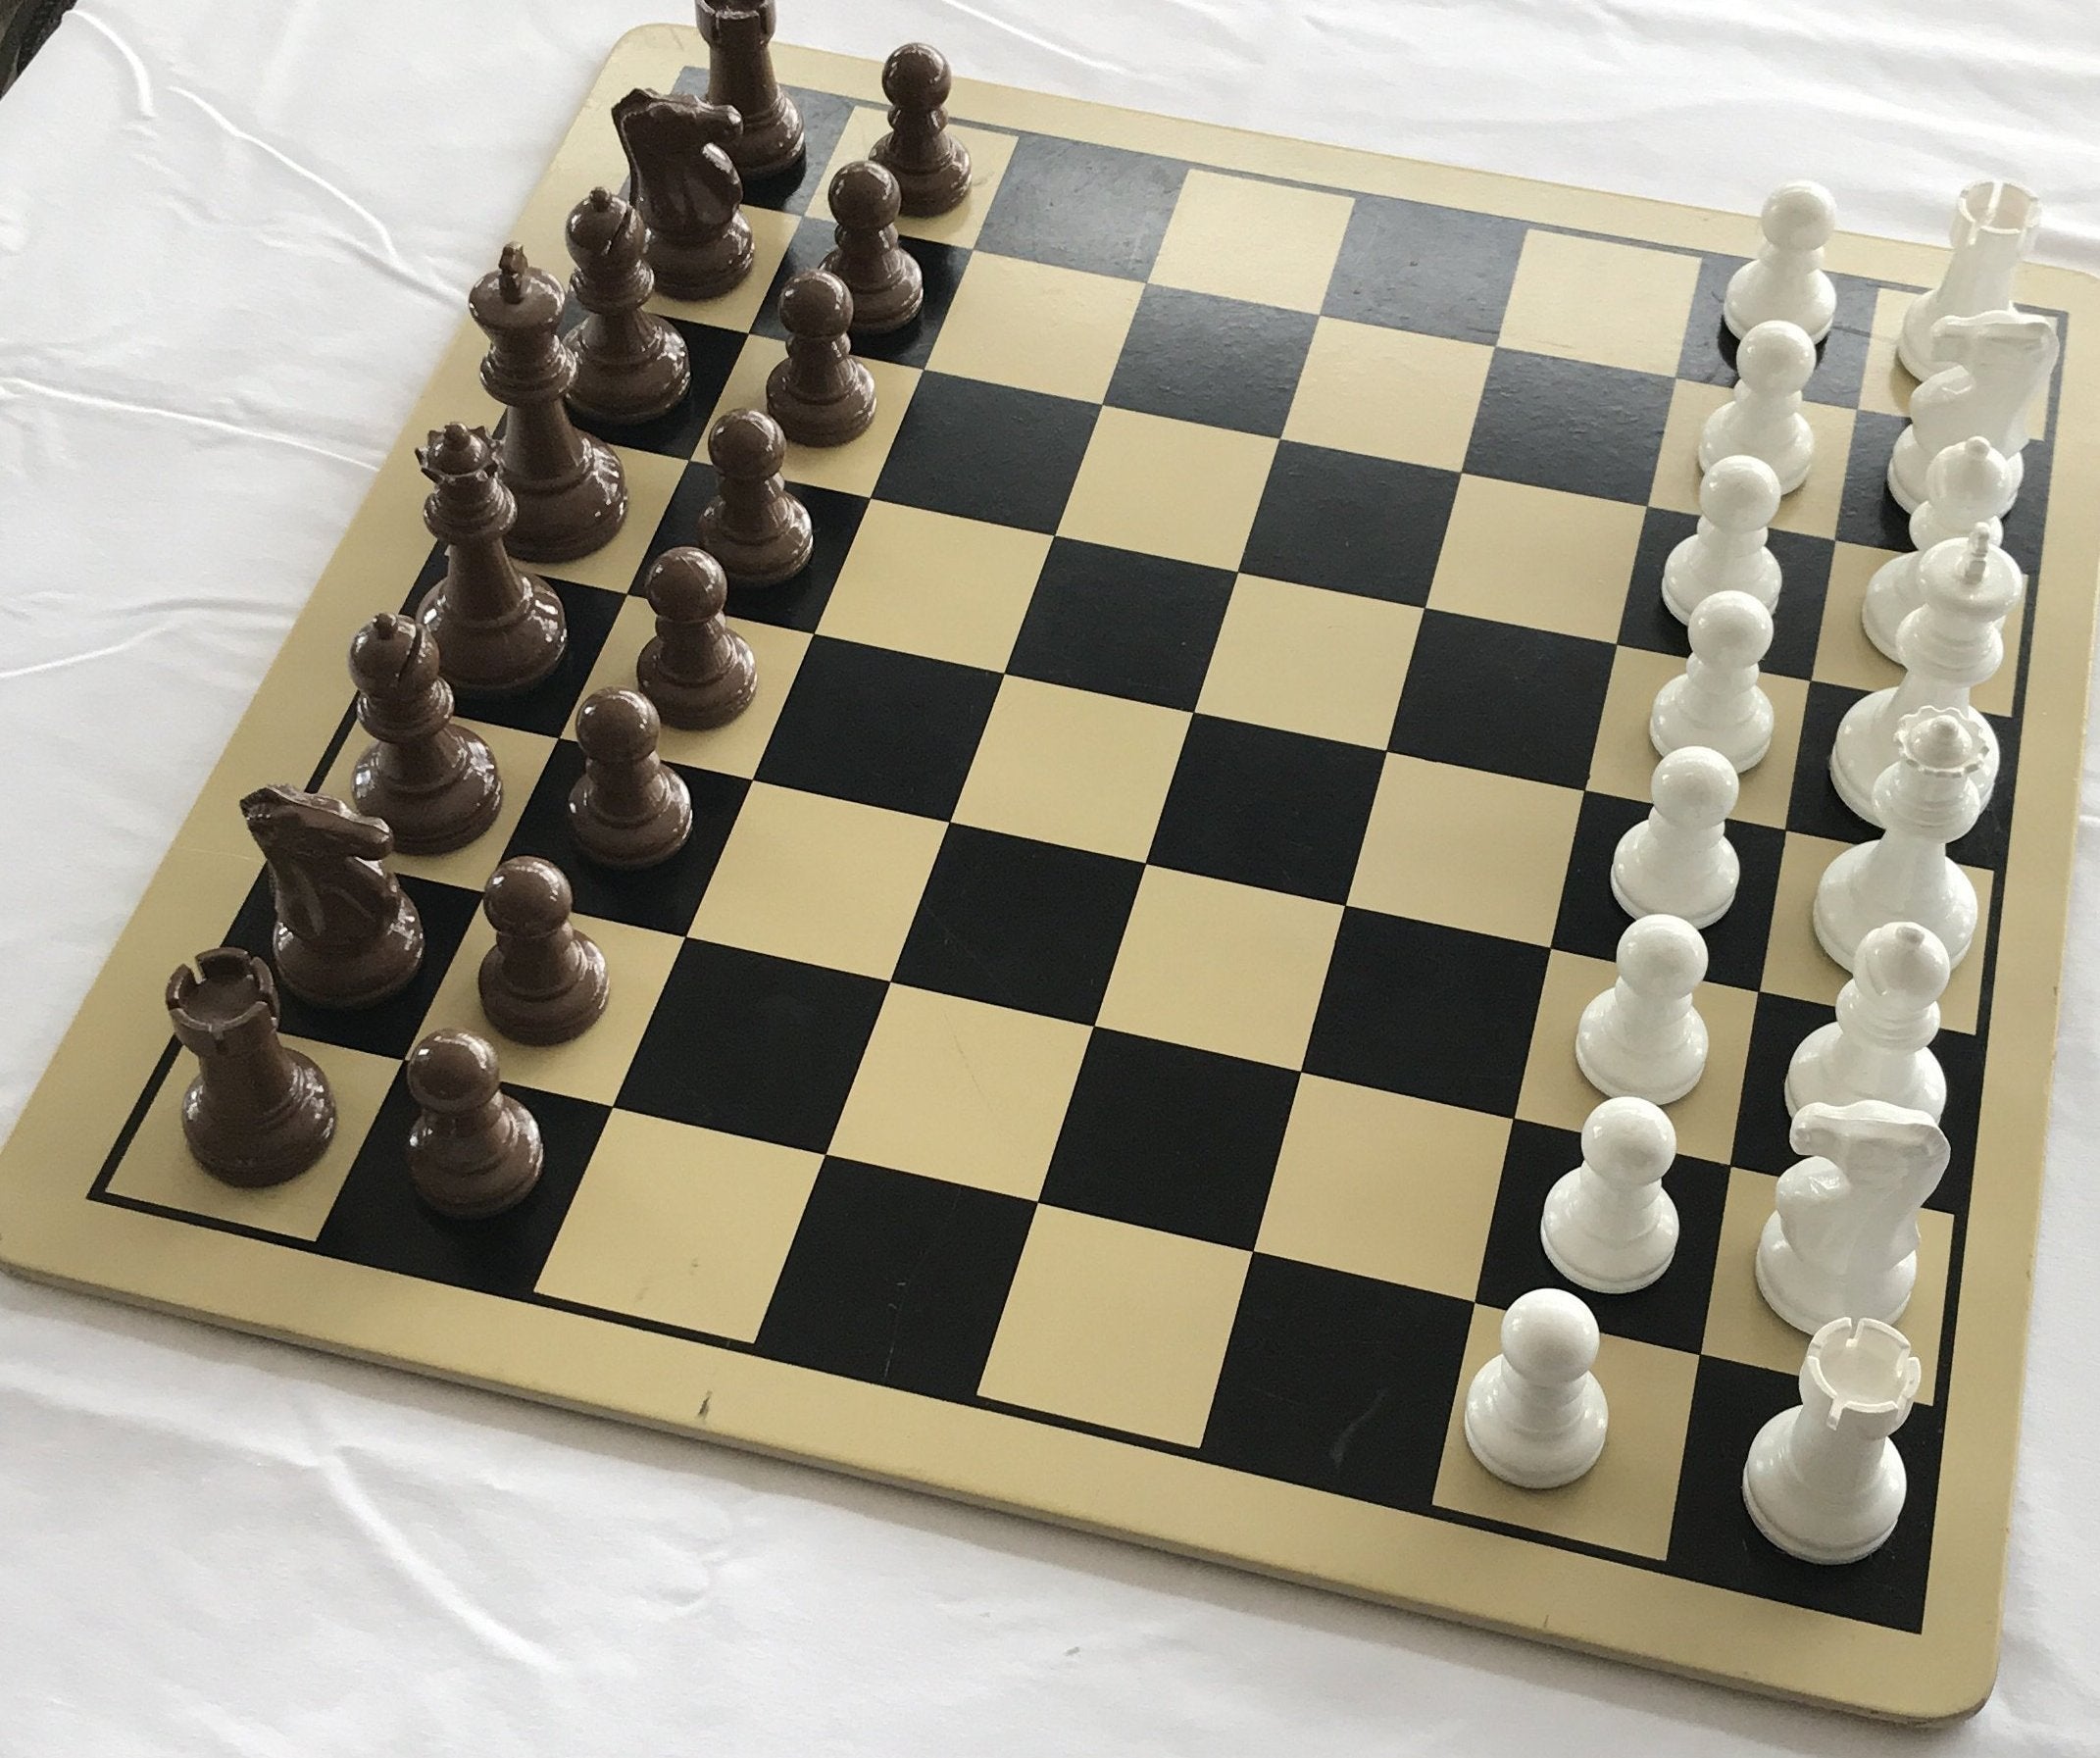 Kasparov vs. Karpov, 1988-2009: Kasparov V Karpov, 1988-2009 by